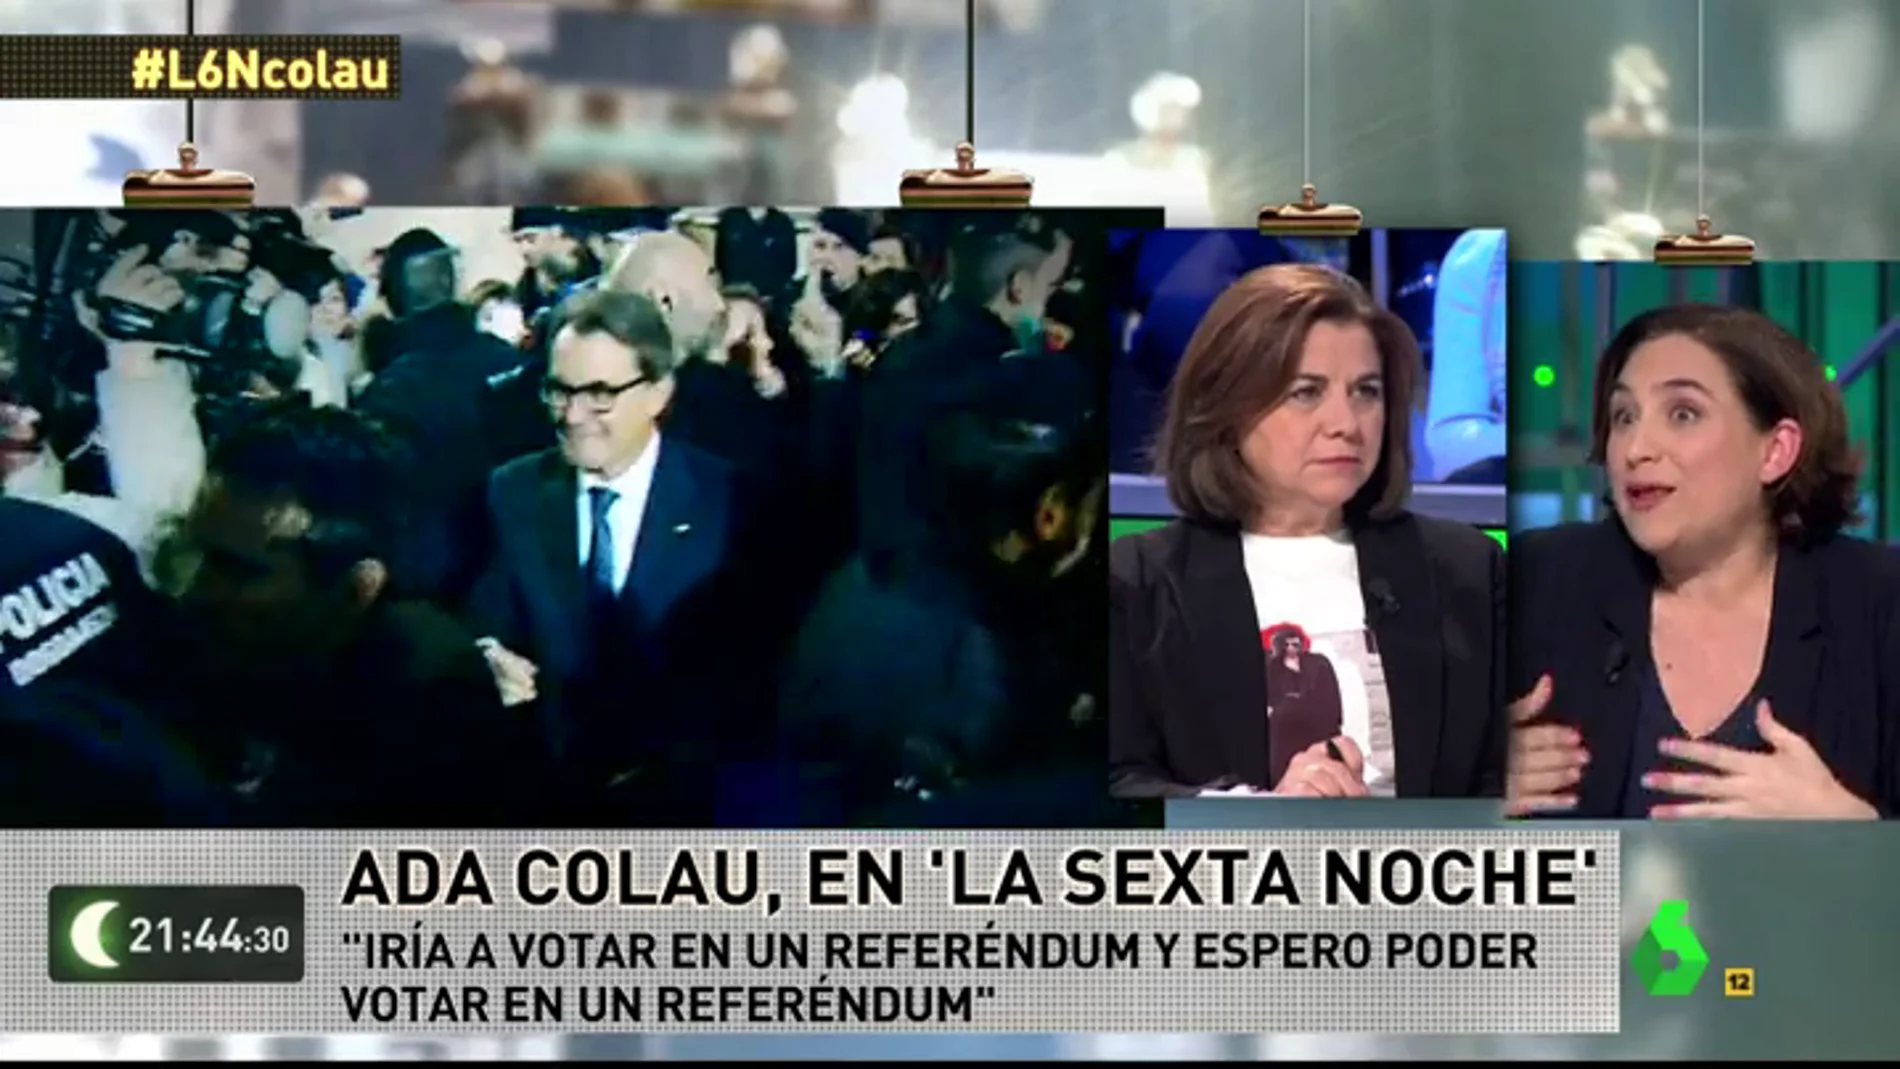 Ada Colau: "Siempre apoyaremos el referéndum; en una democracia lo mejor es hablar las cosas"